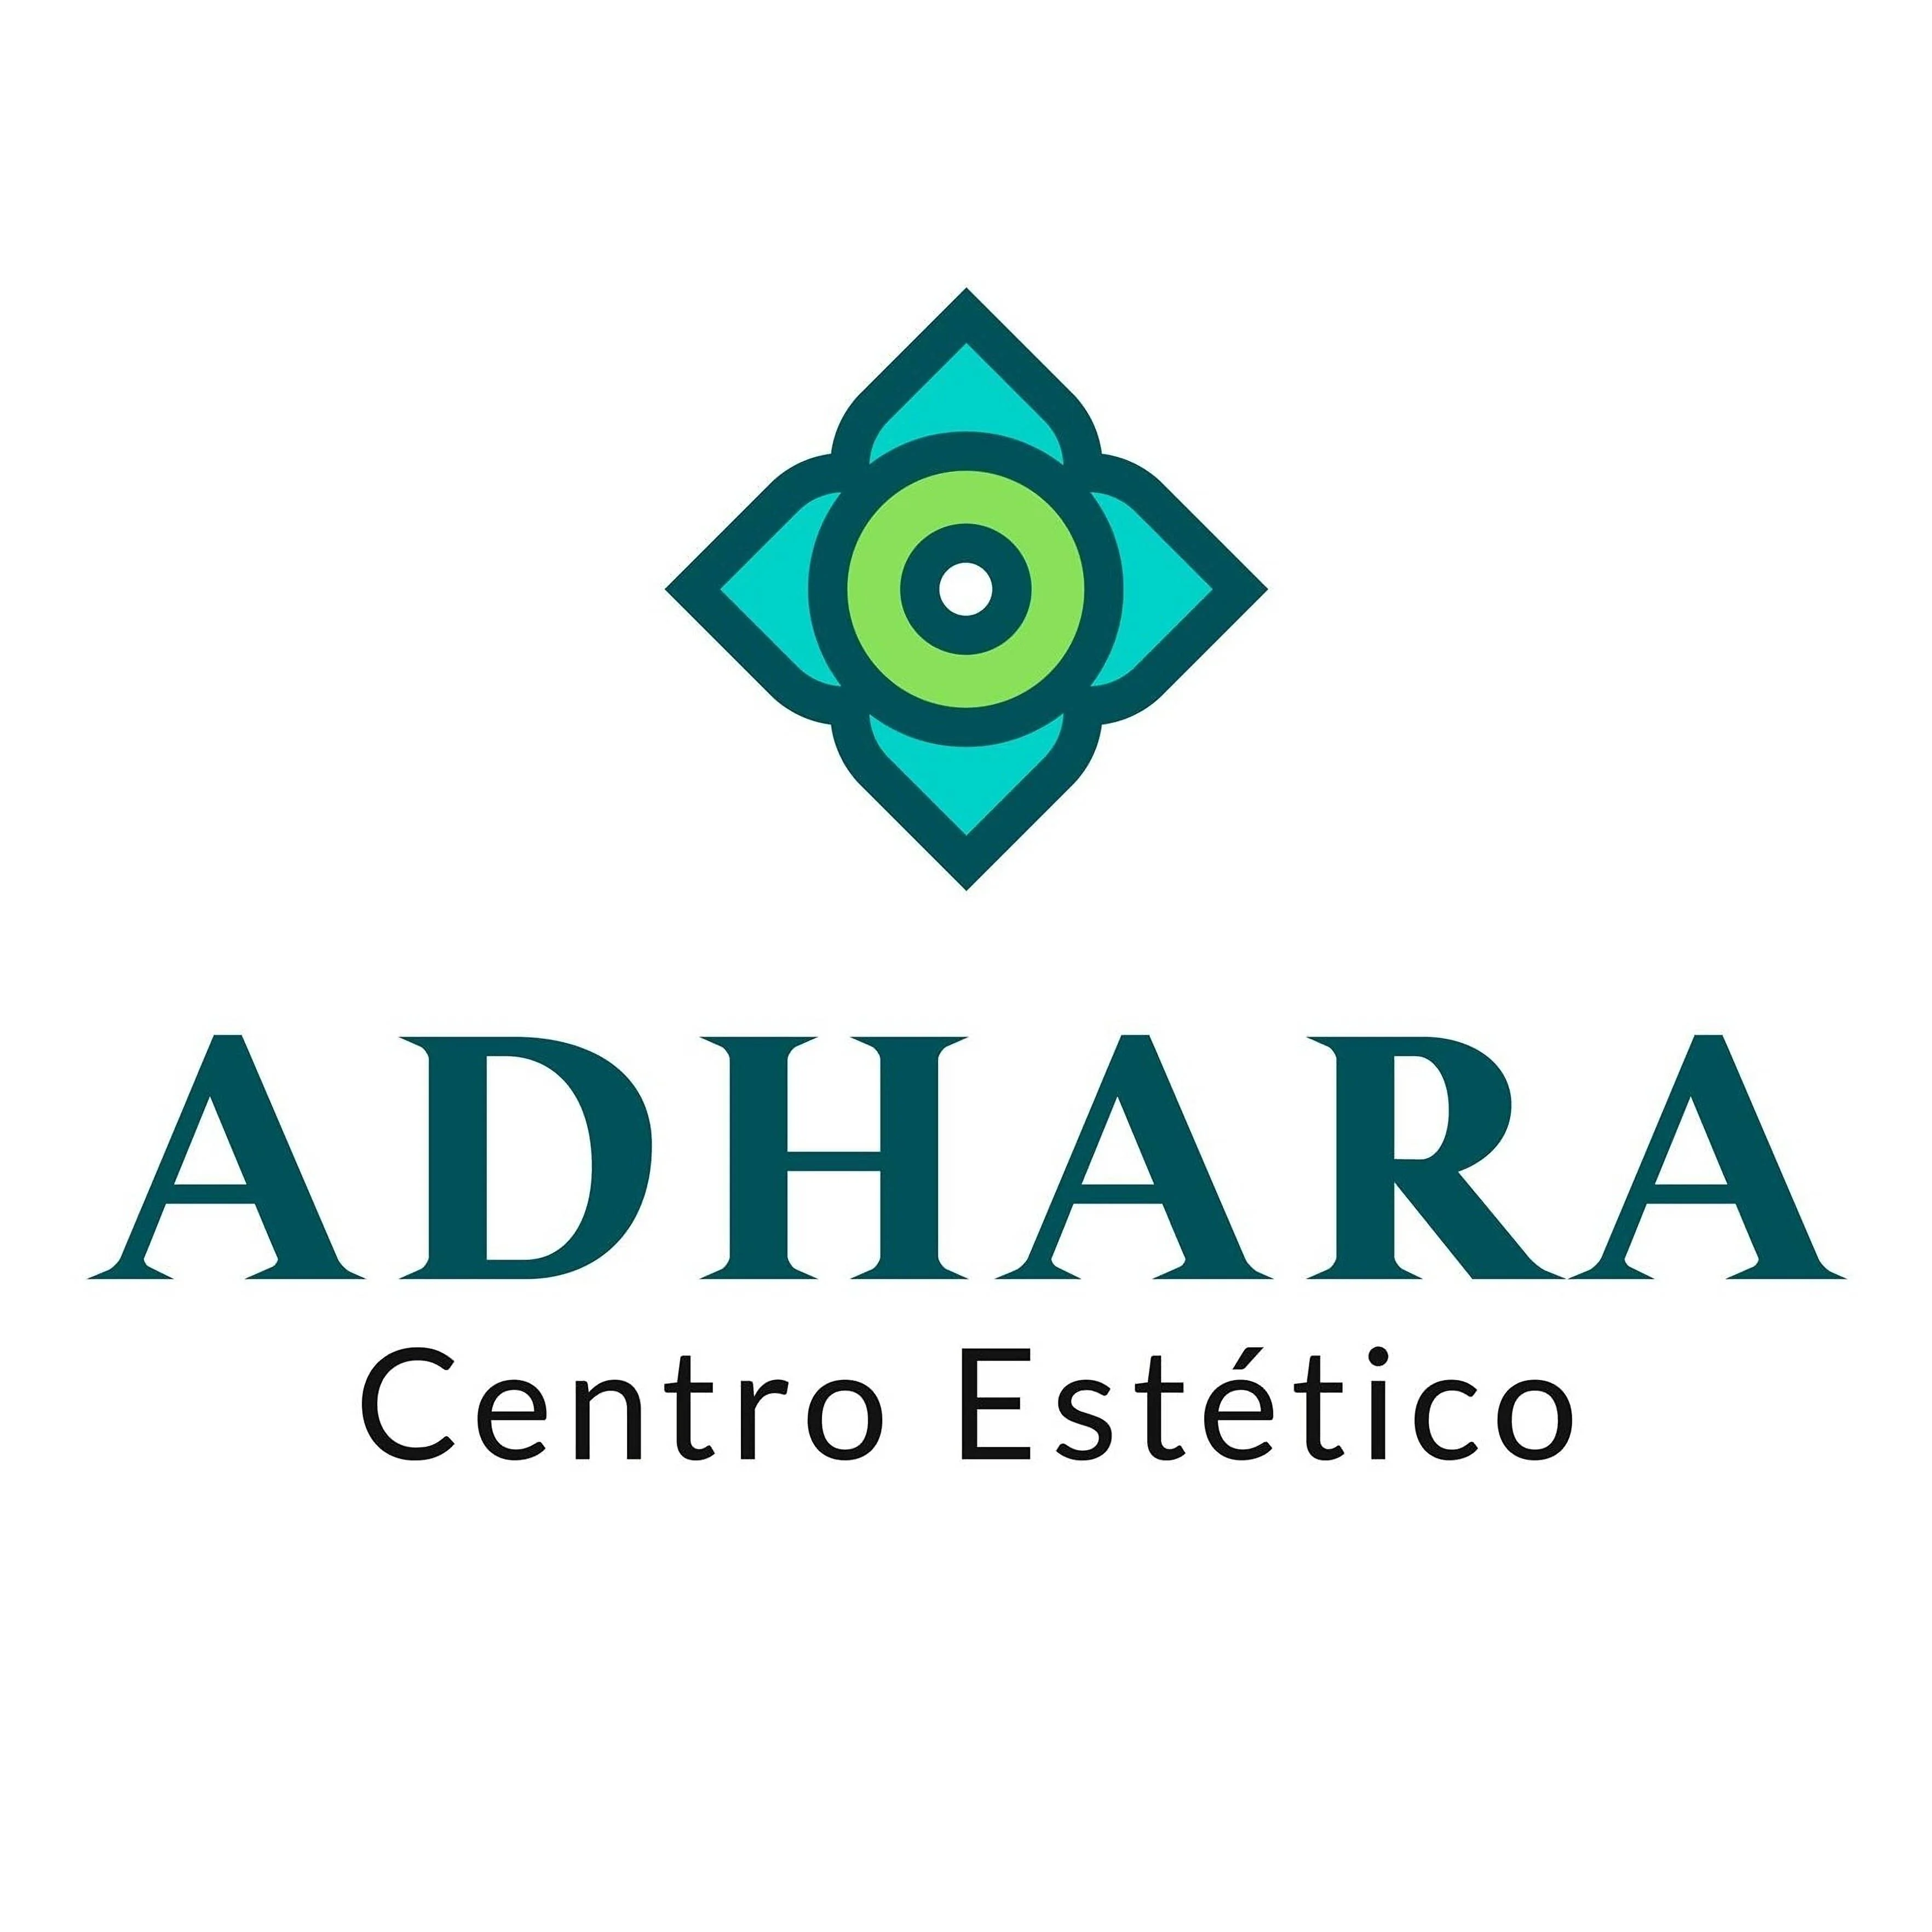 Centro Estetico-adhara-centro-de-estetica-avanzada-9214